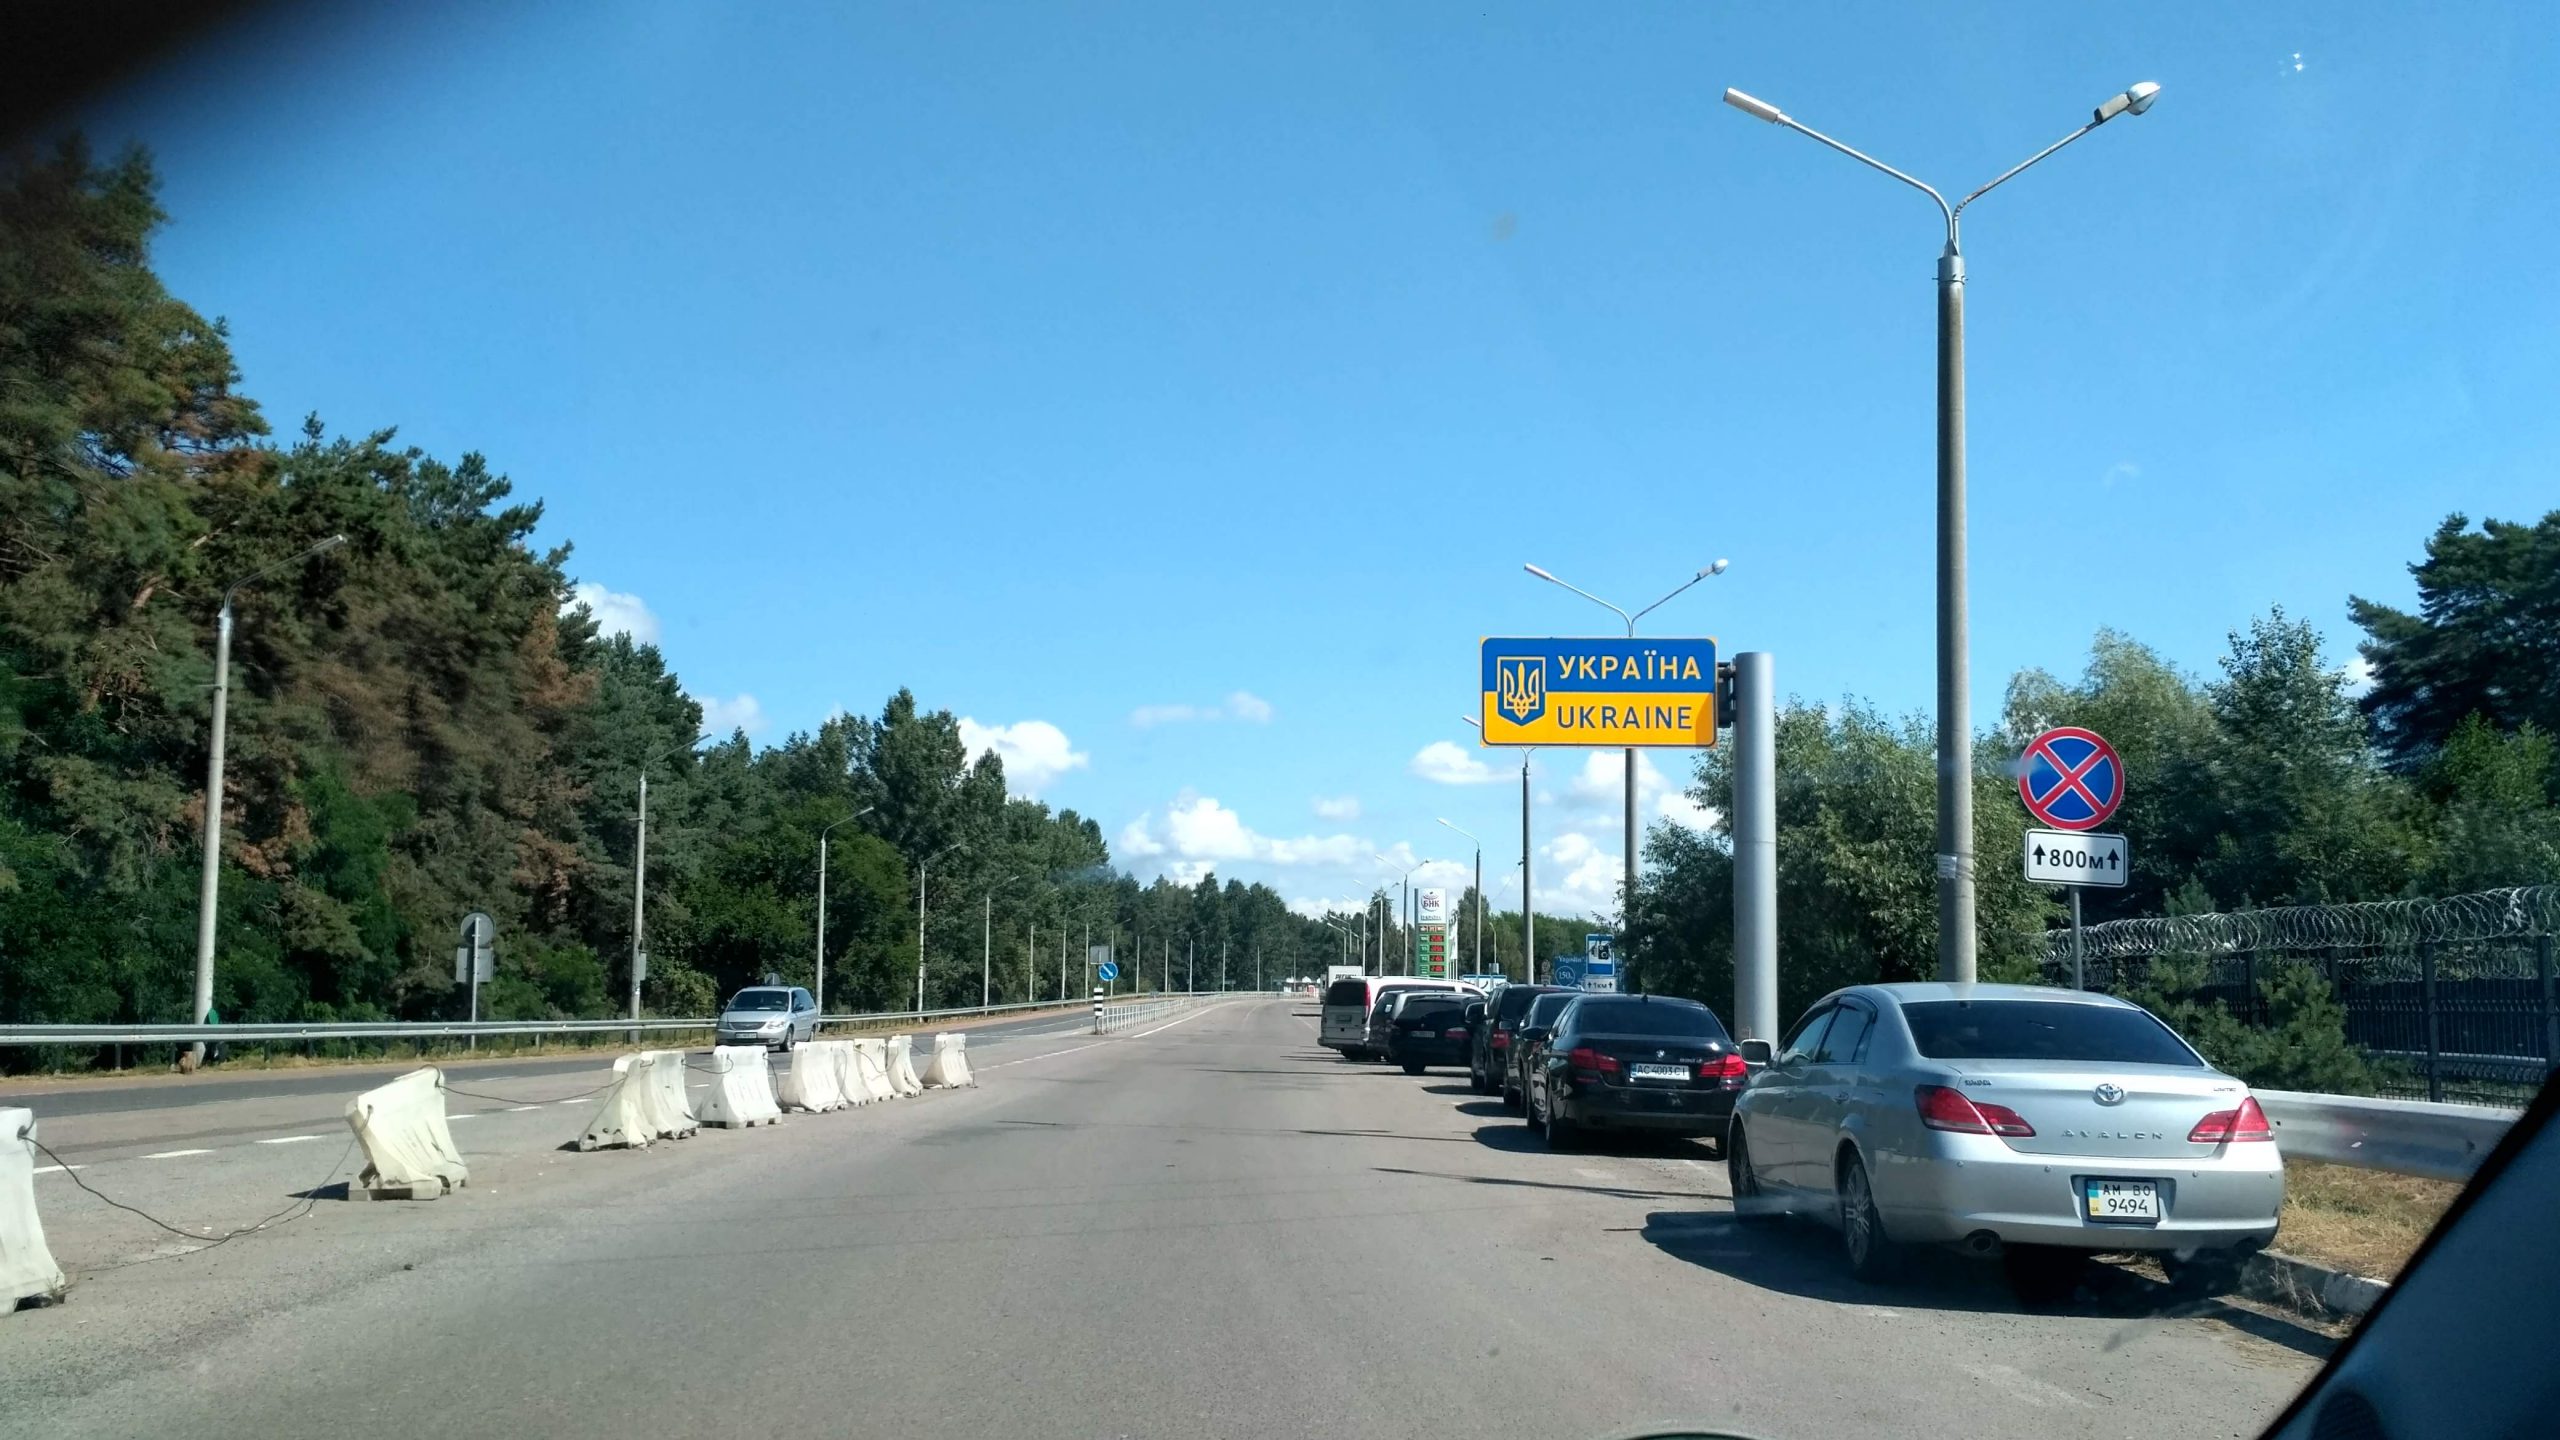 driving in Ukraine